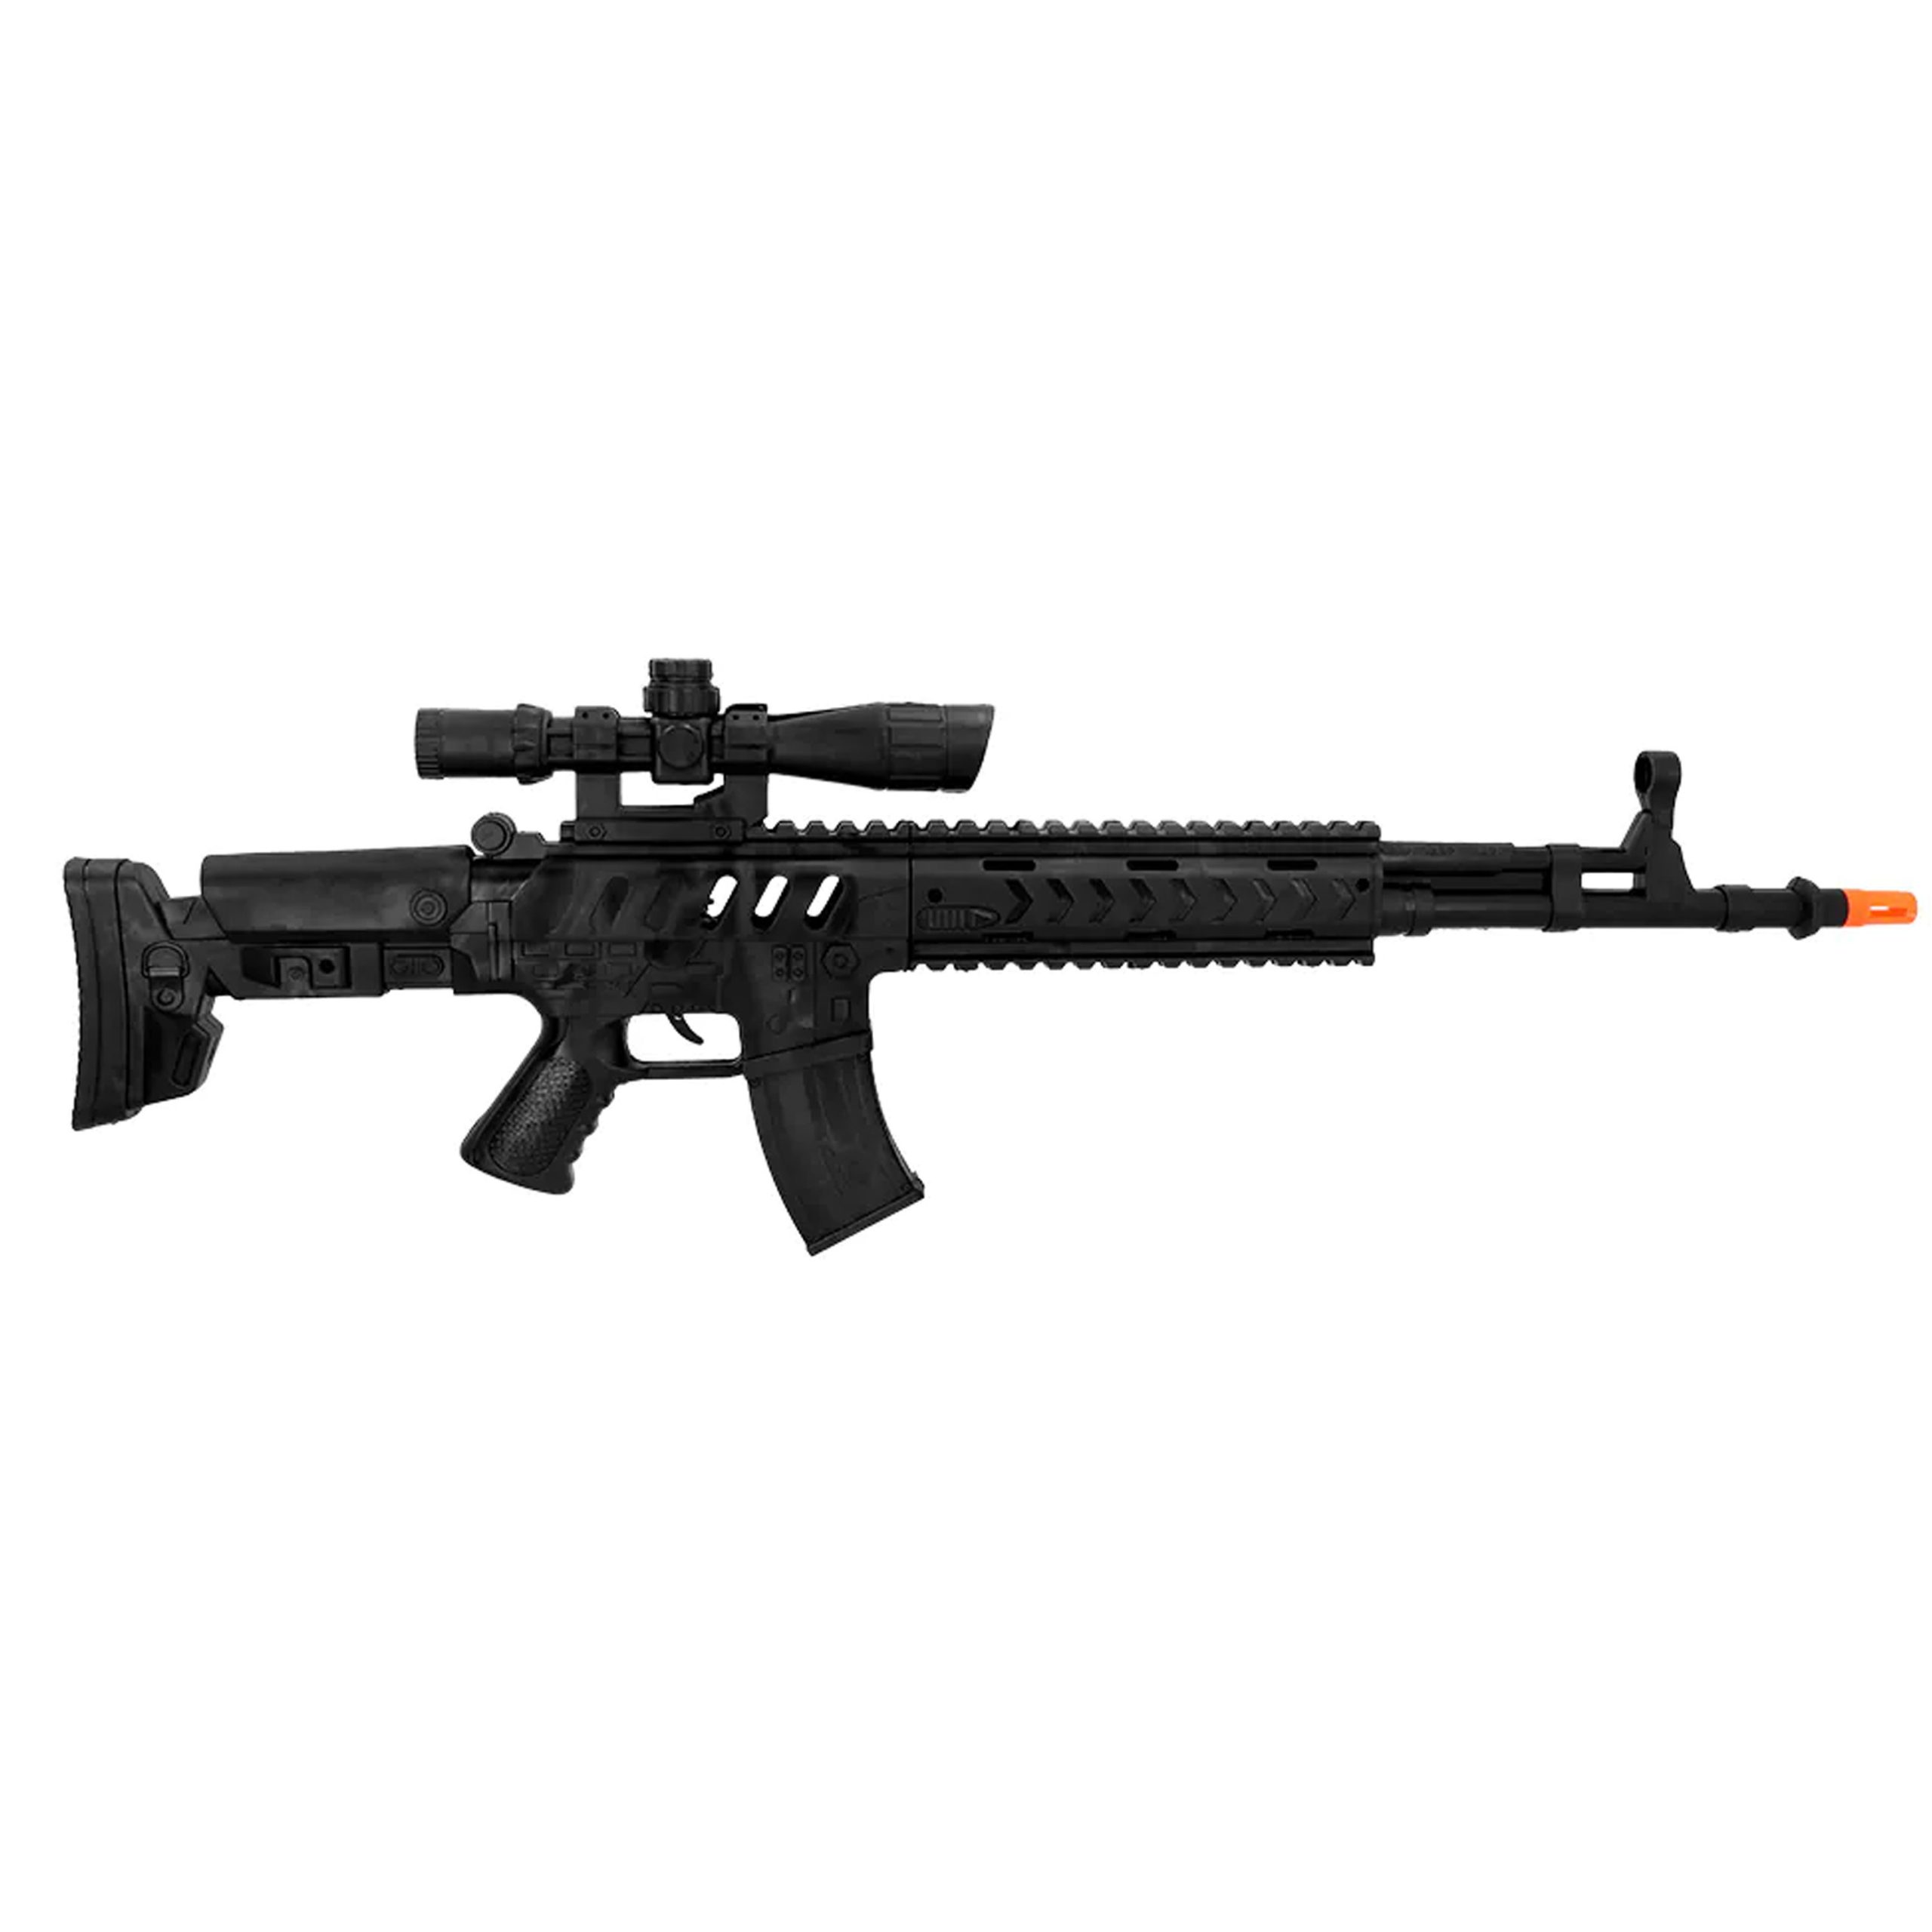 Boland Verkleed speelgoed Politie/soldaten geweer - machinegeweer - zwart - plastic - 68 cm